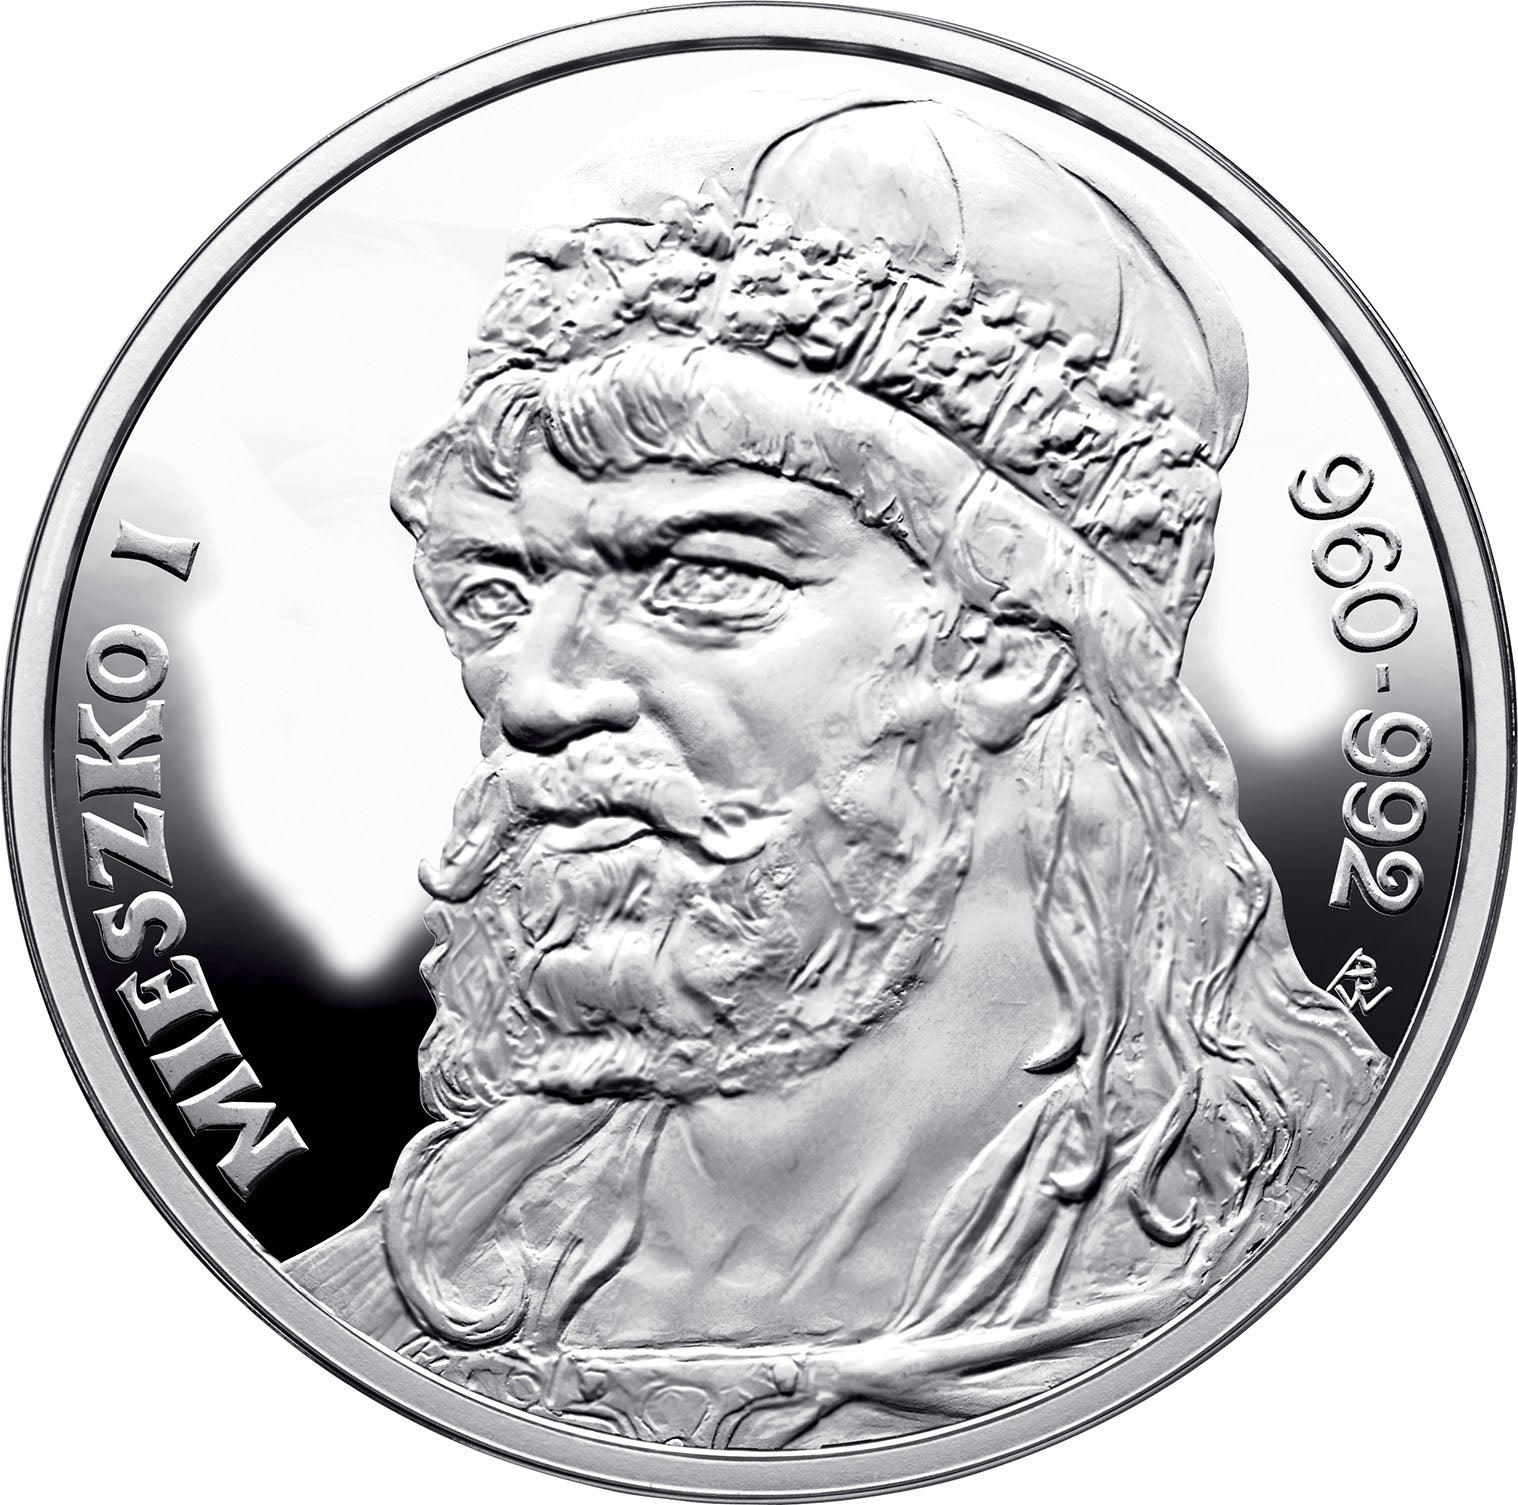 925pf Silver Medal - Piast Dynasty, King Mieszko I